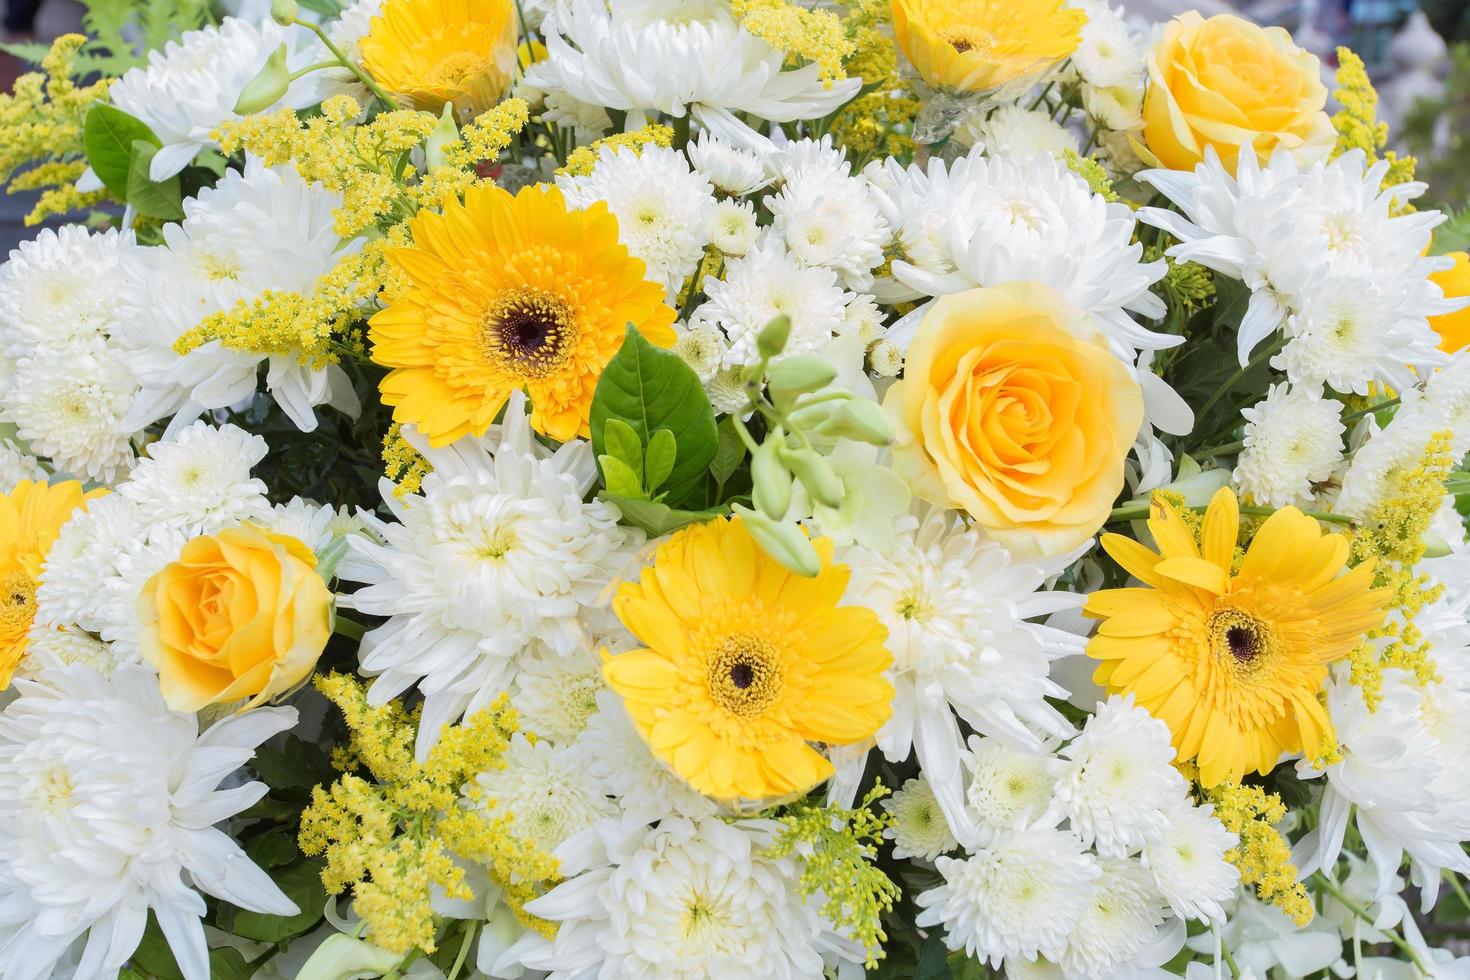 fiori di crisantemo gialli e bianchi, la rosa era decorata con foglie verdi come ghirlanda da usare nei funerali. foto